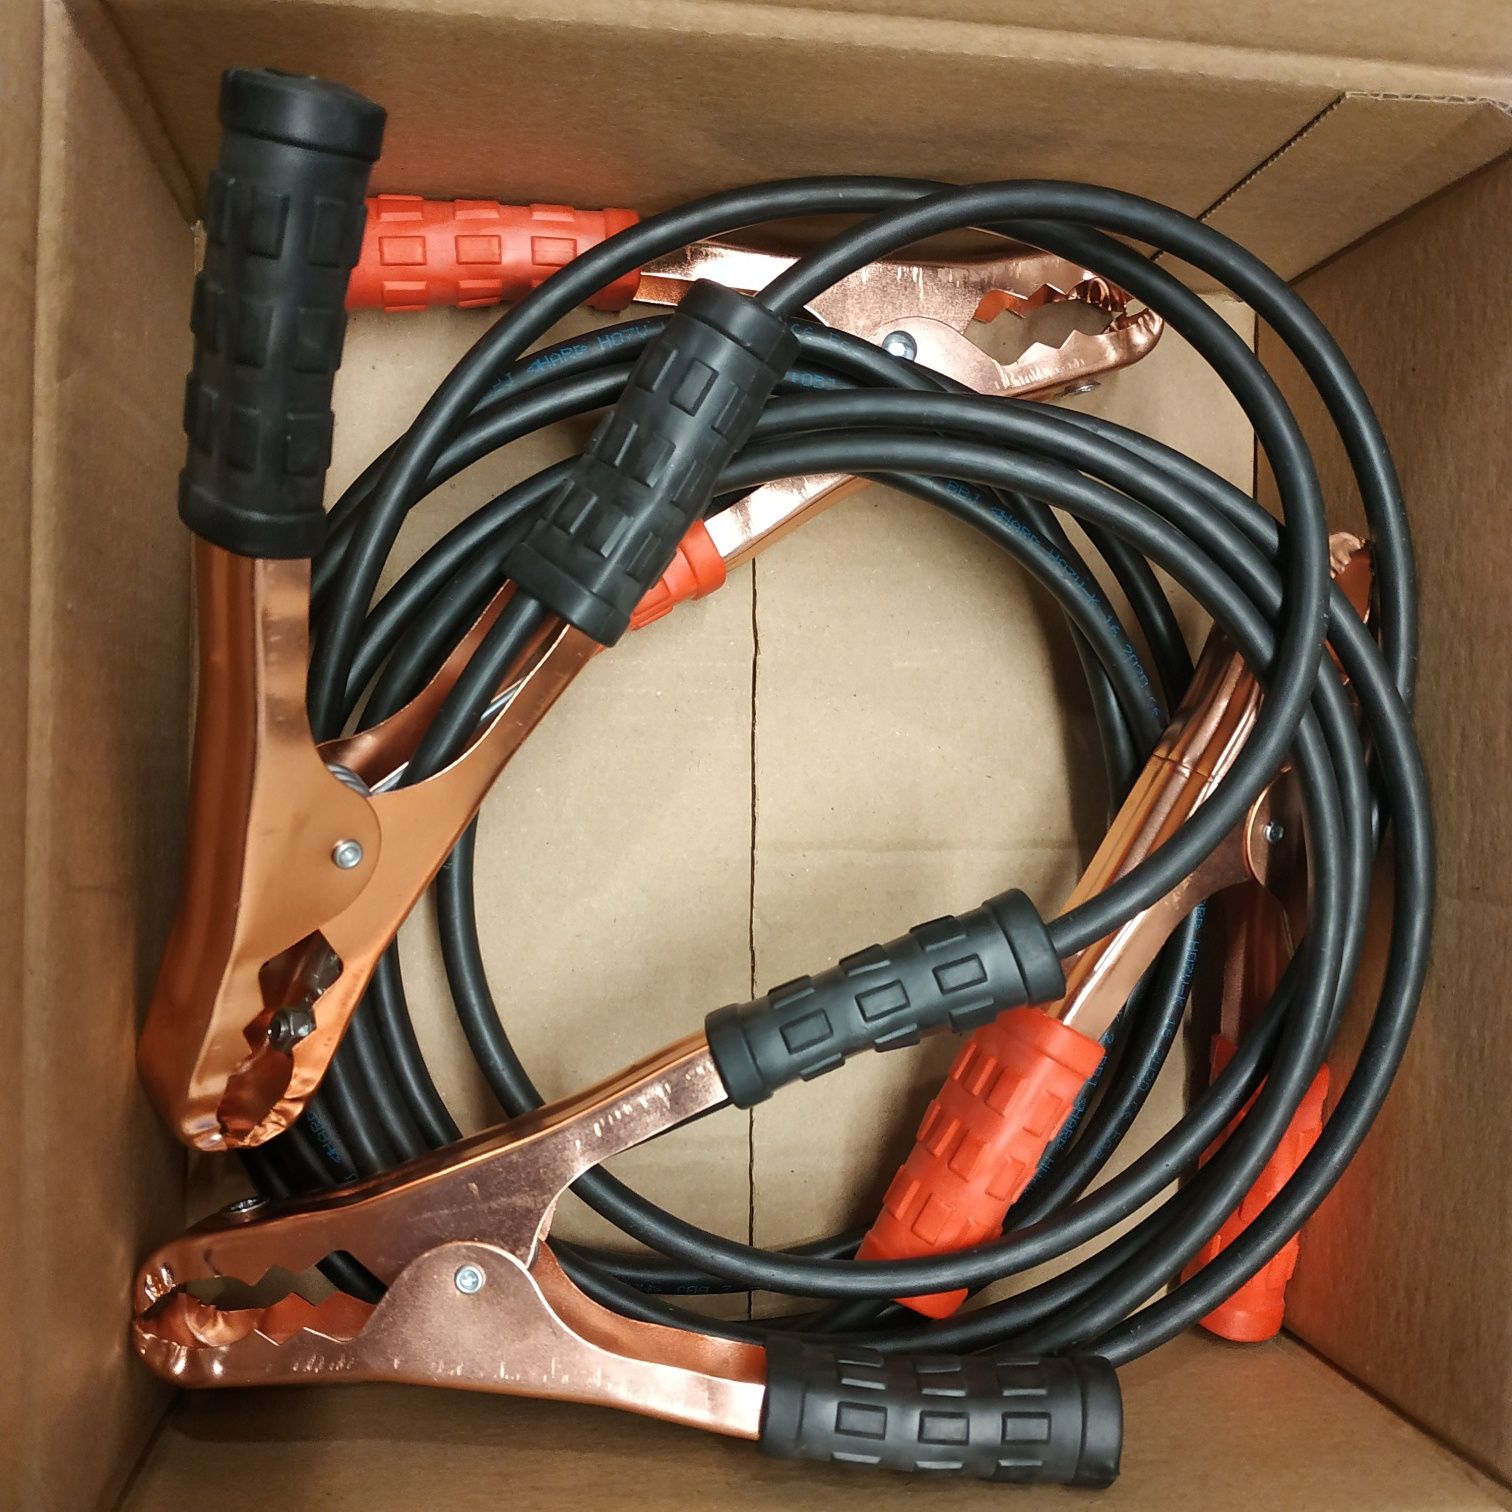 Kable rozruchowe przewody 16mm2  3mb / idealne na prezent / wysyłka